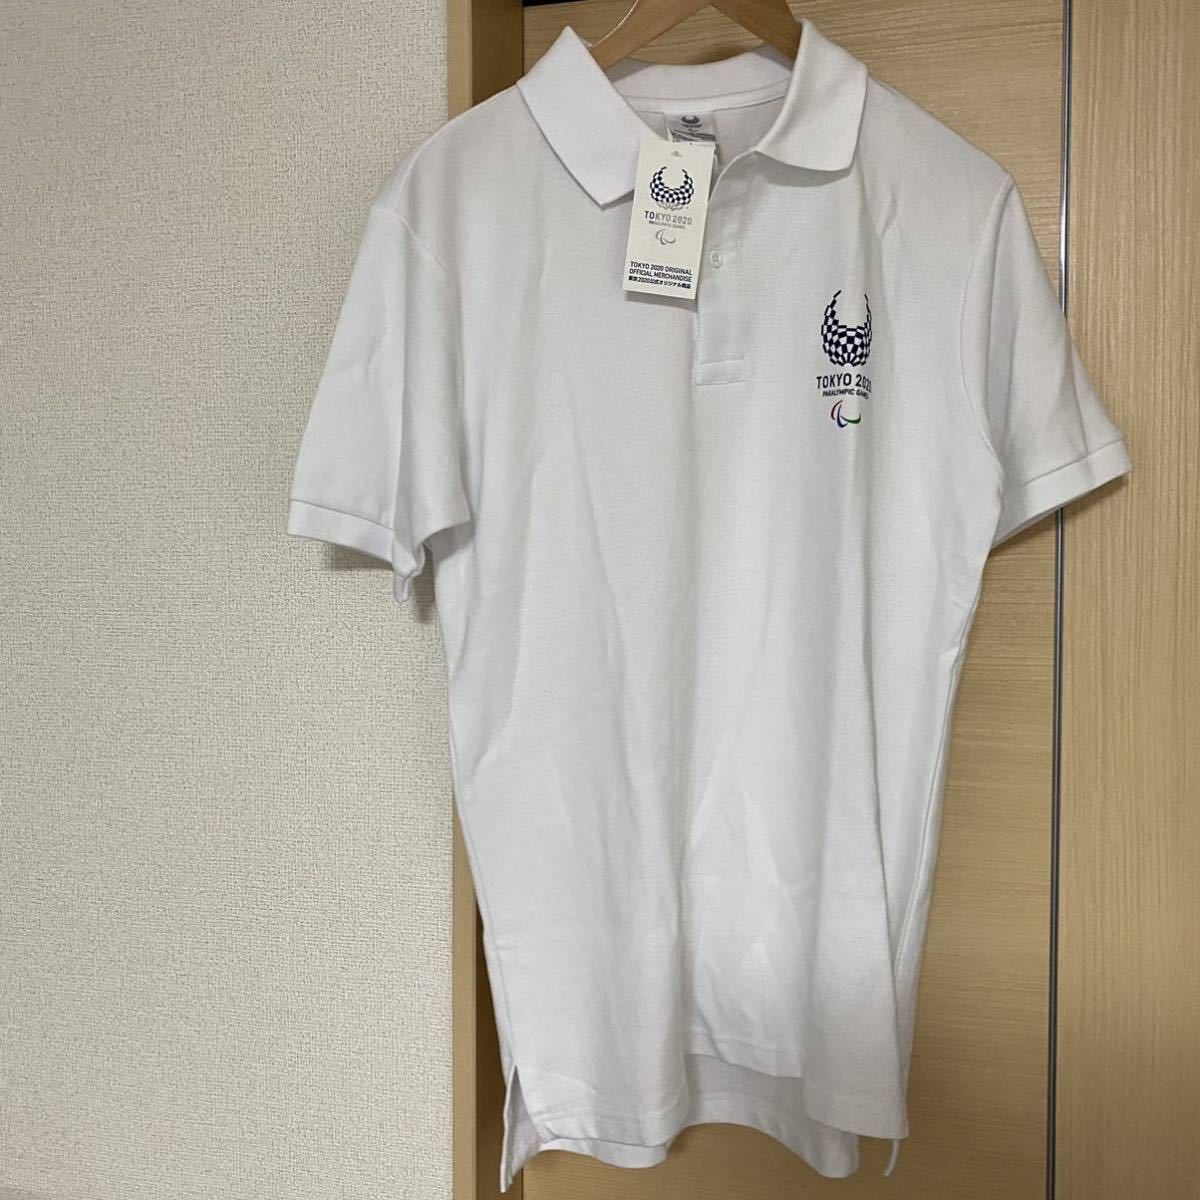 新品 パラリンピック 東京オリンピック2020 ポロシャツ ホワイト Lサイズ TOKYO2020タグ付き 半袖 東京2020 送料無料 送料込  オフィシャル